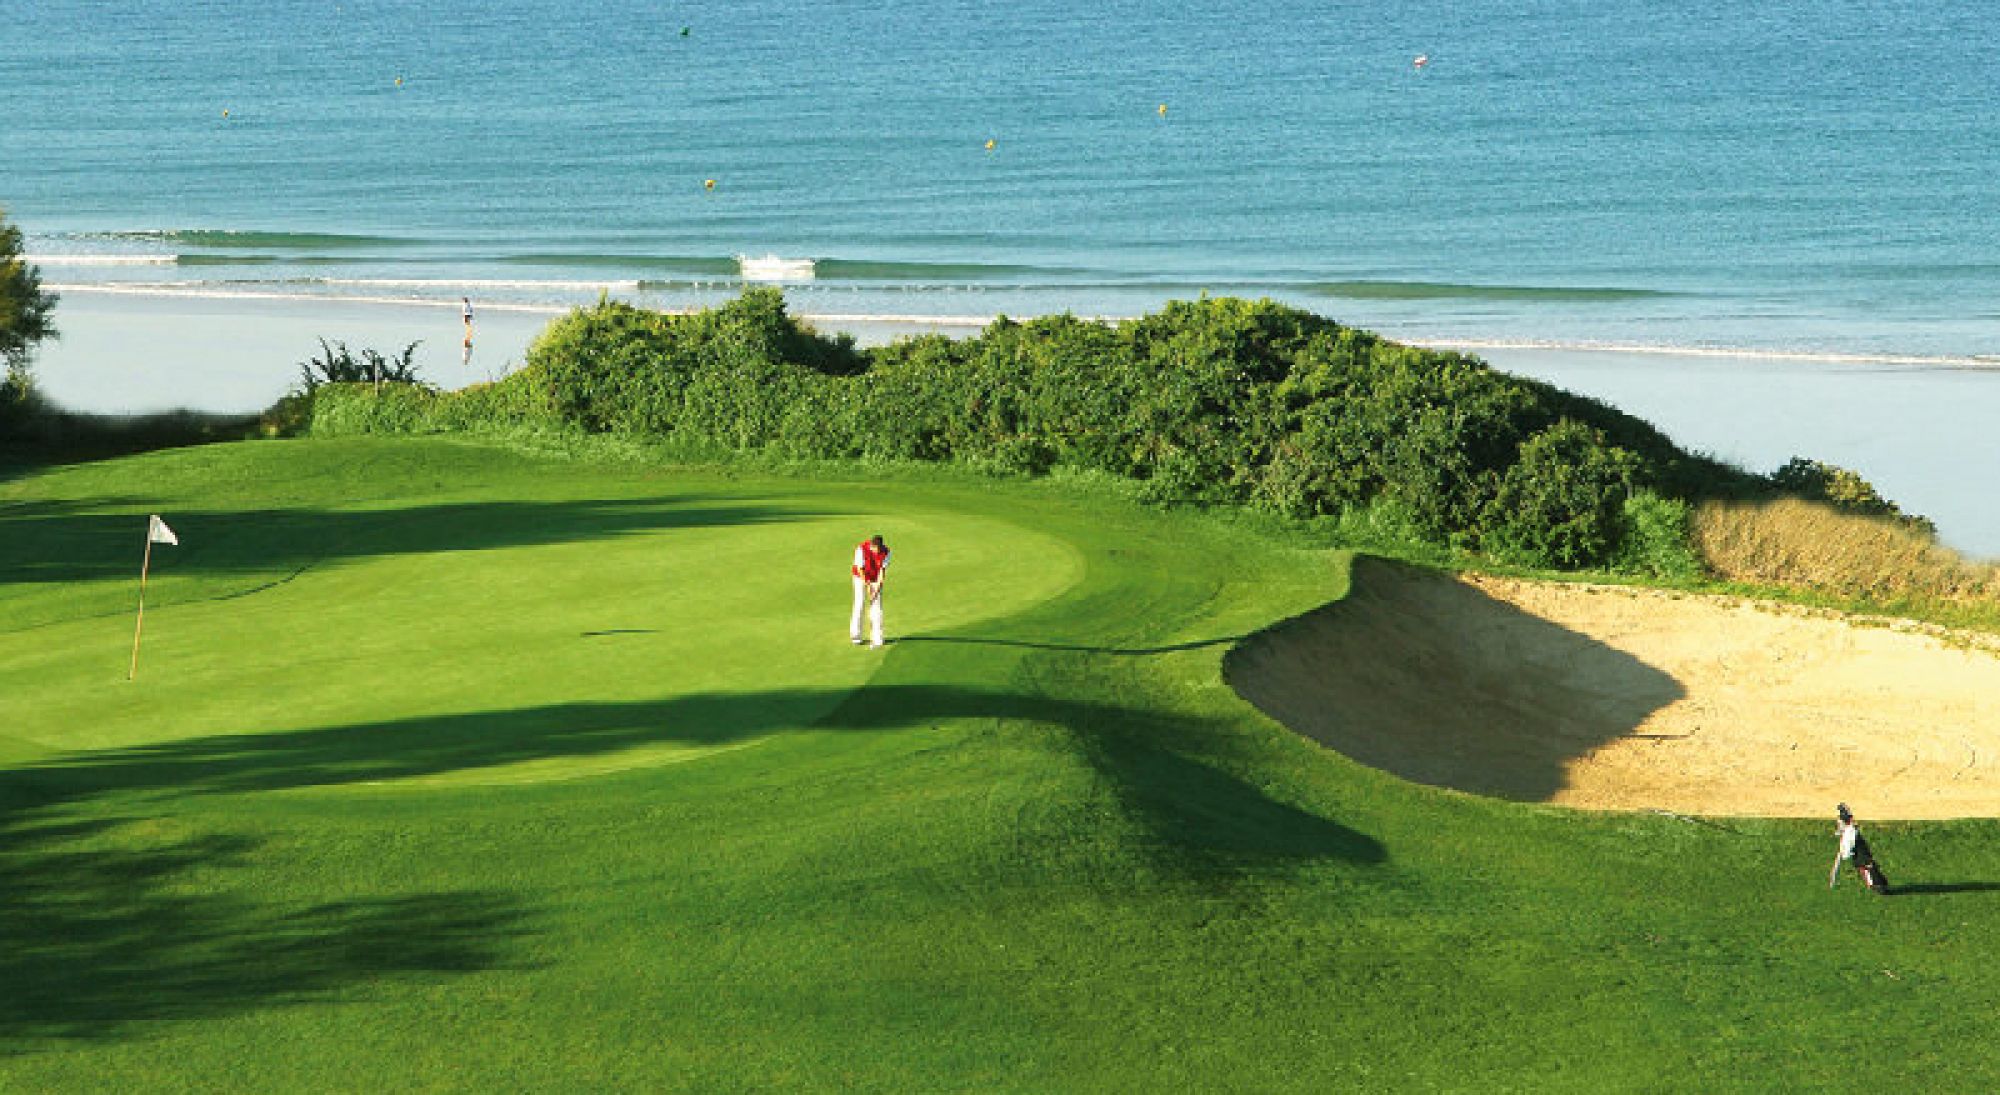 All The Novo Sancti Petri Golf 's beautiful golf course in amazing Costa de la Luz.